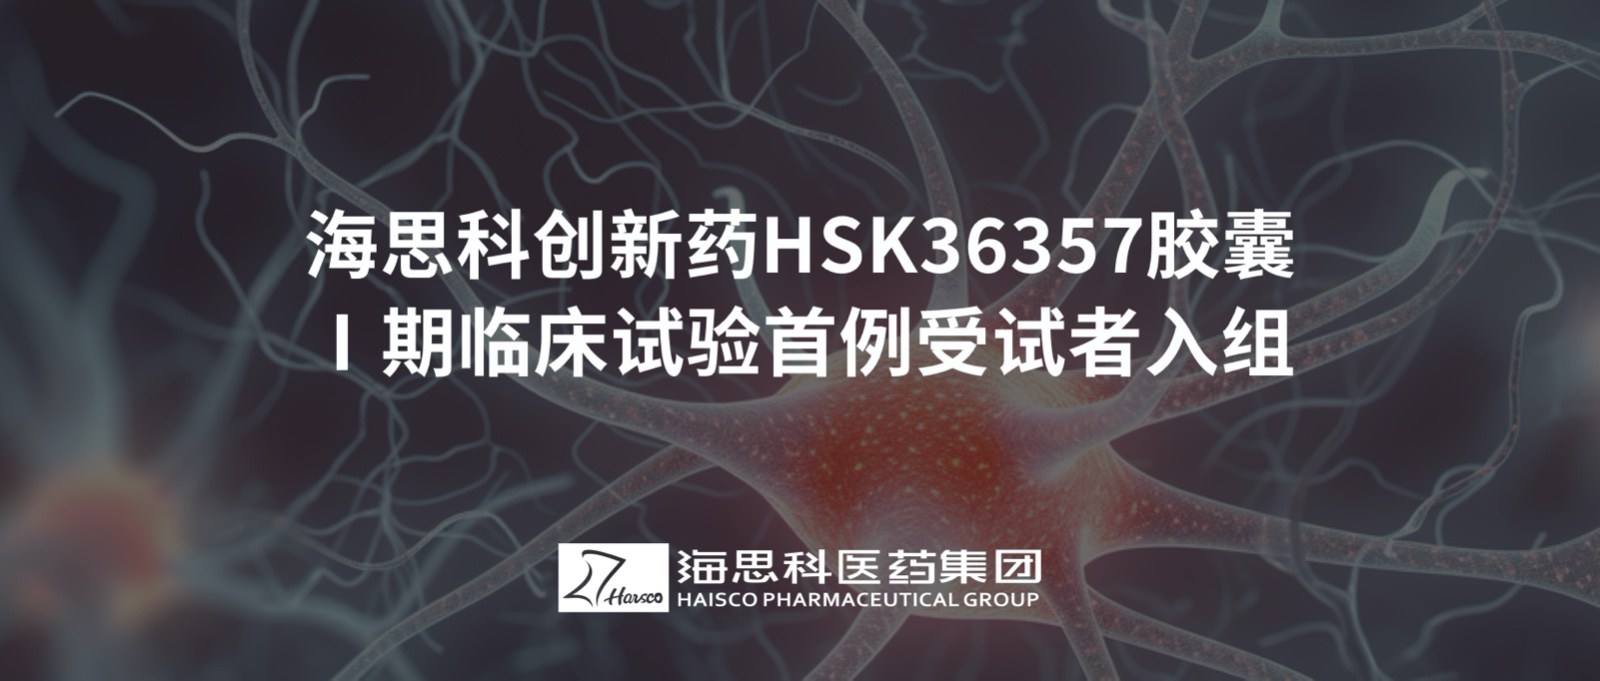 澳门在线娱乐太阳集团创新药HSK36357胶囊Ⅰ期临床试验首例受试者入组